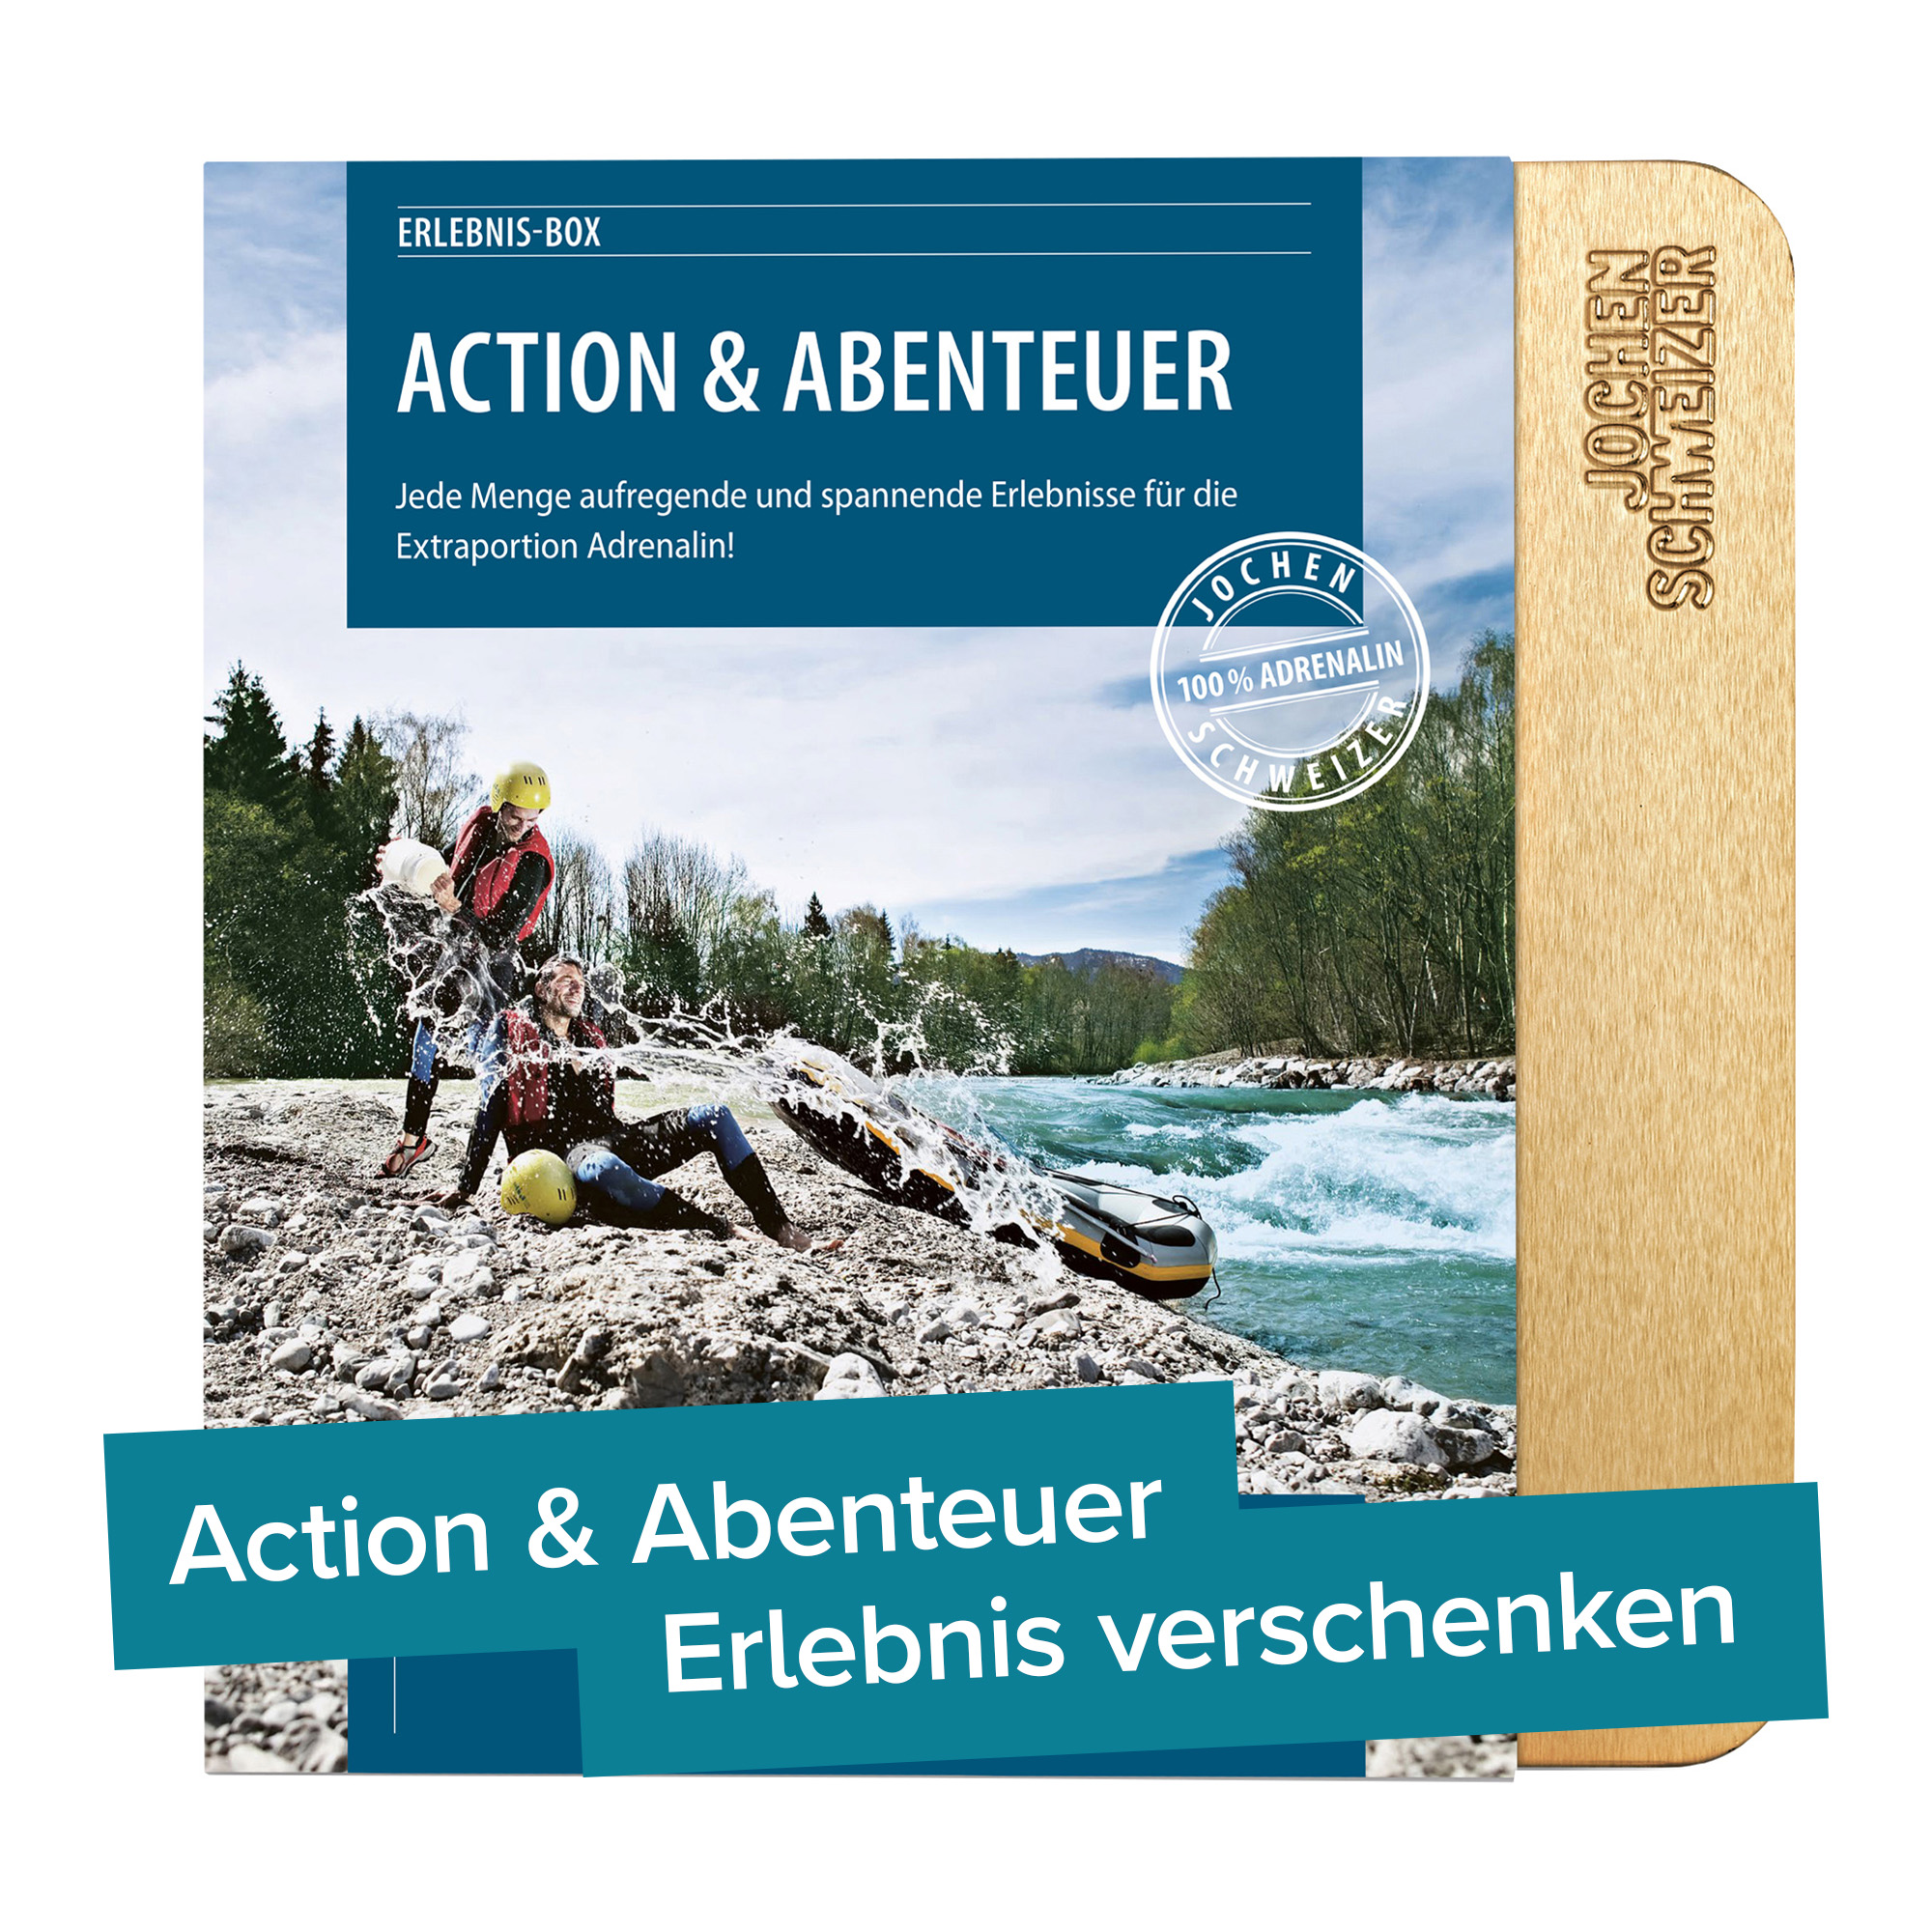 Action & Abenteuer - Erlebnisgeschenk